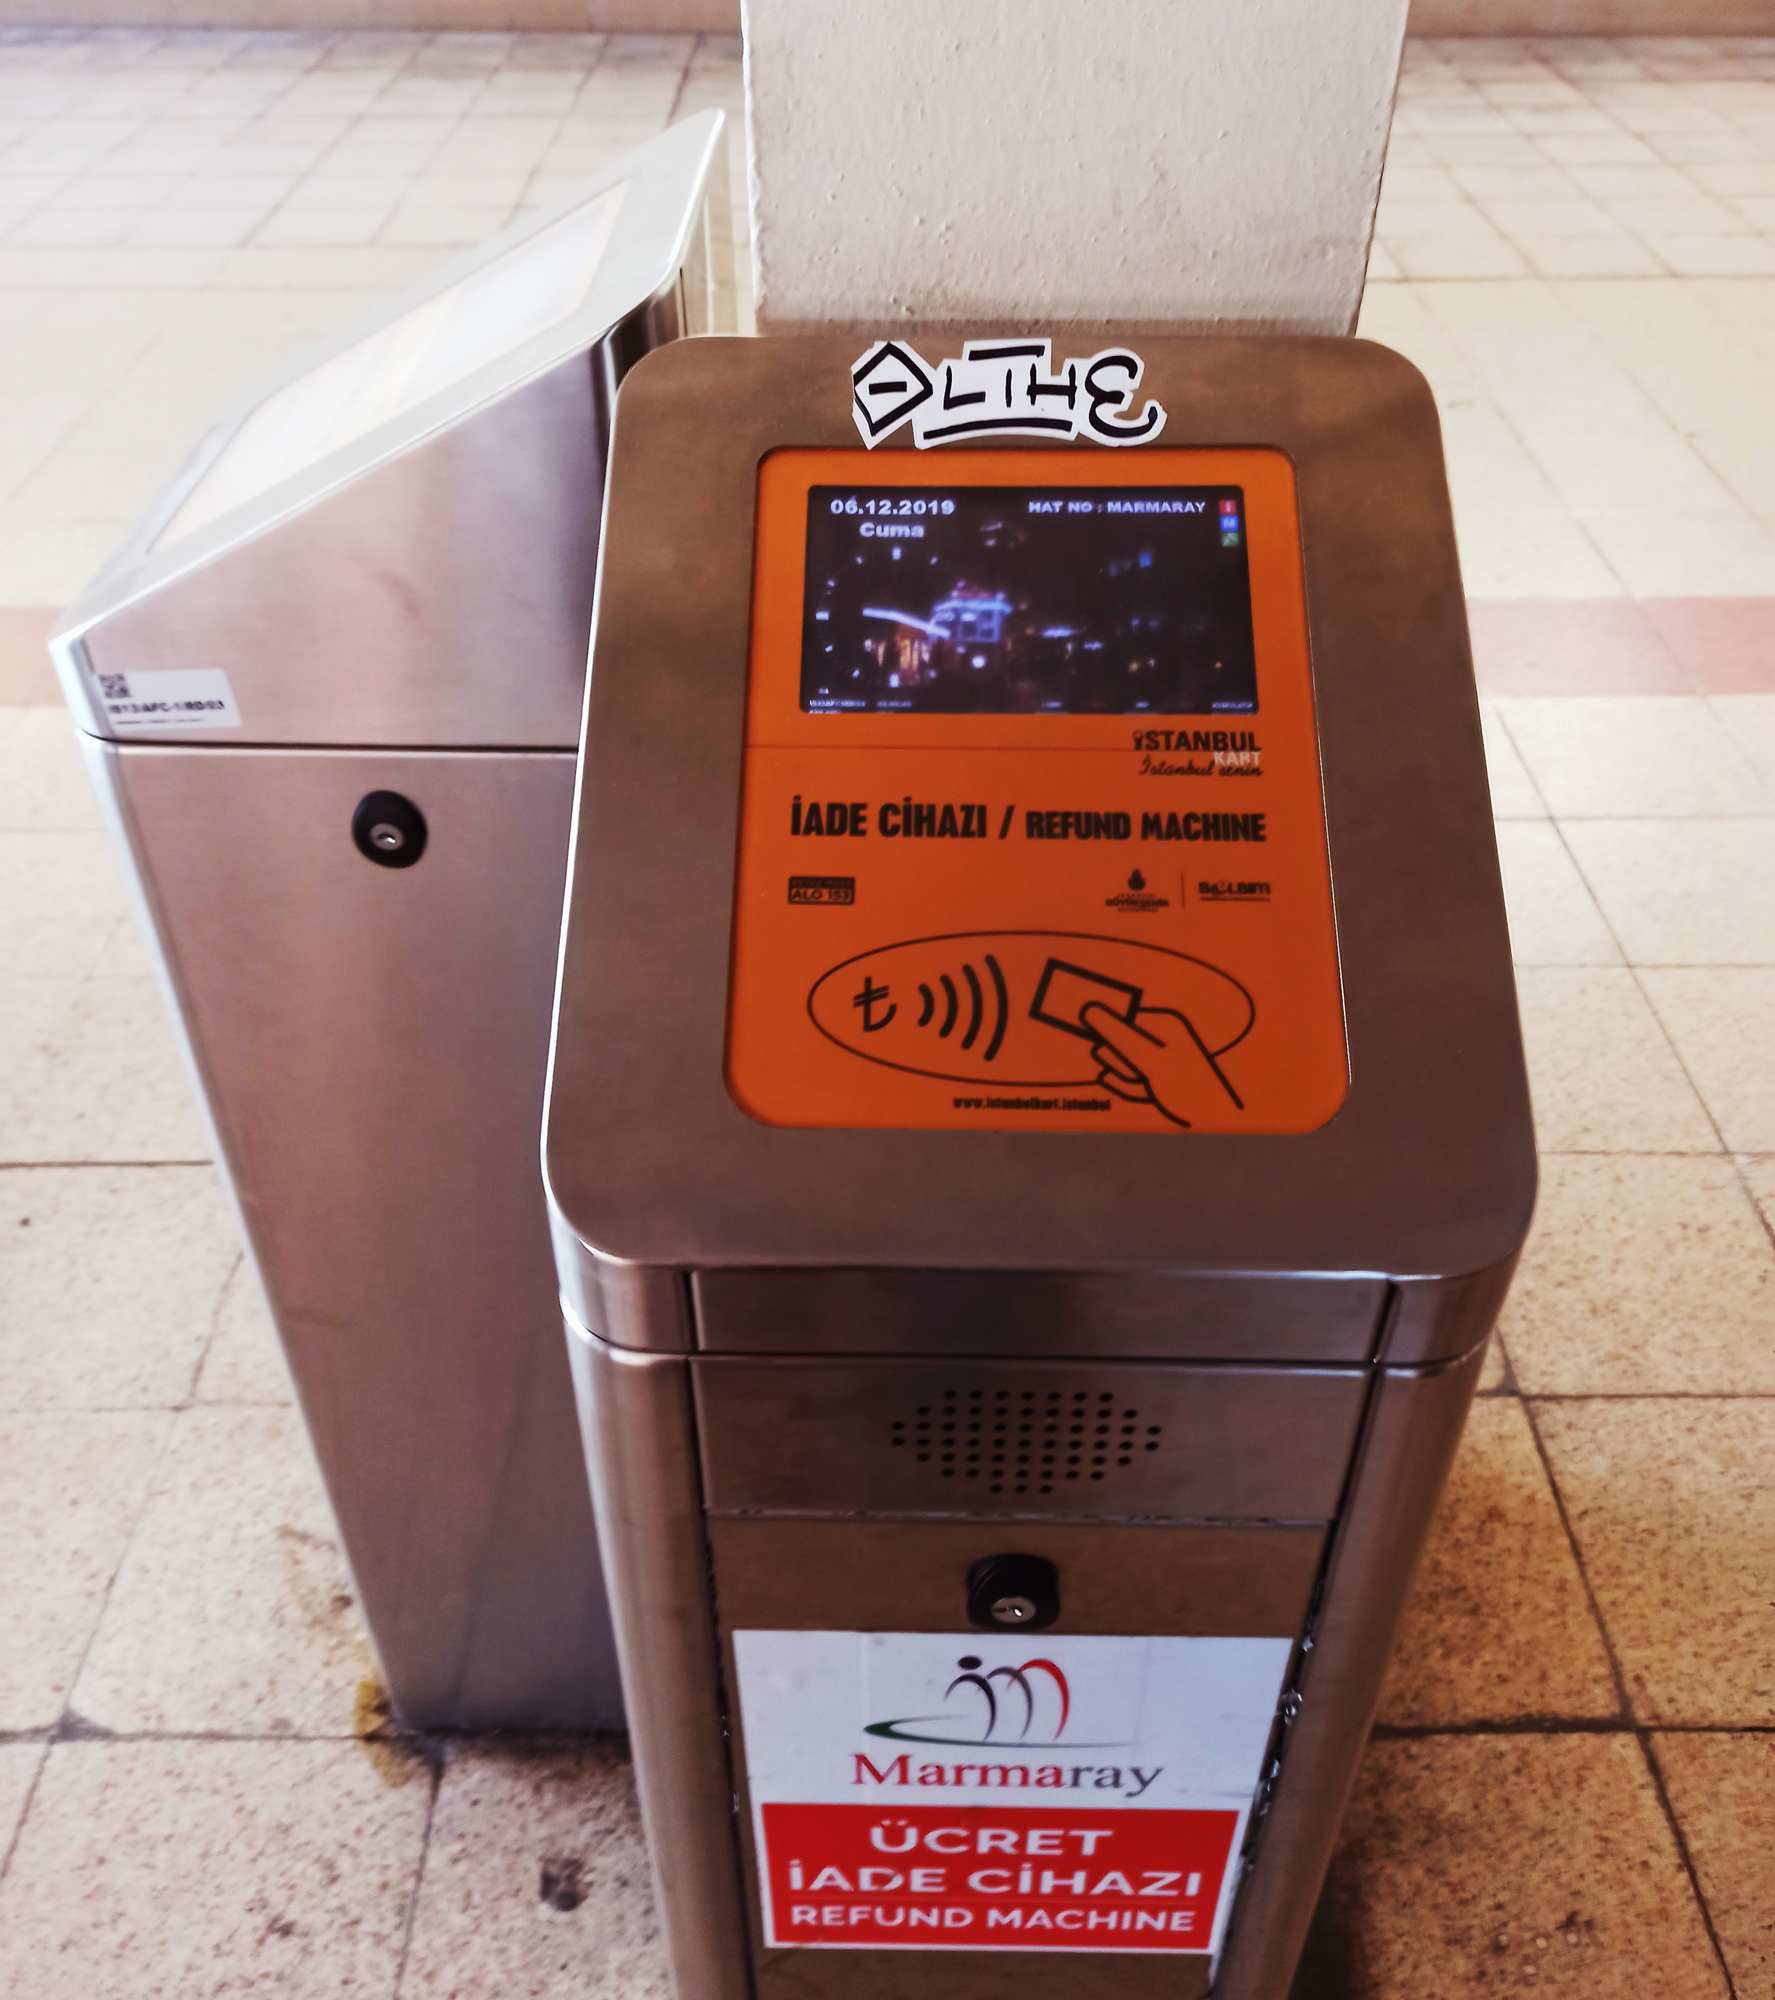 Автомат по возврату денежных средств на istanbulkart за проезд на Мармарай в Стамбуле